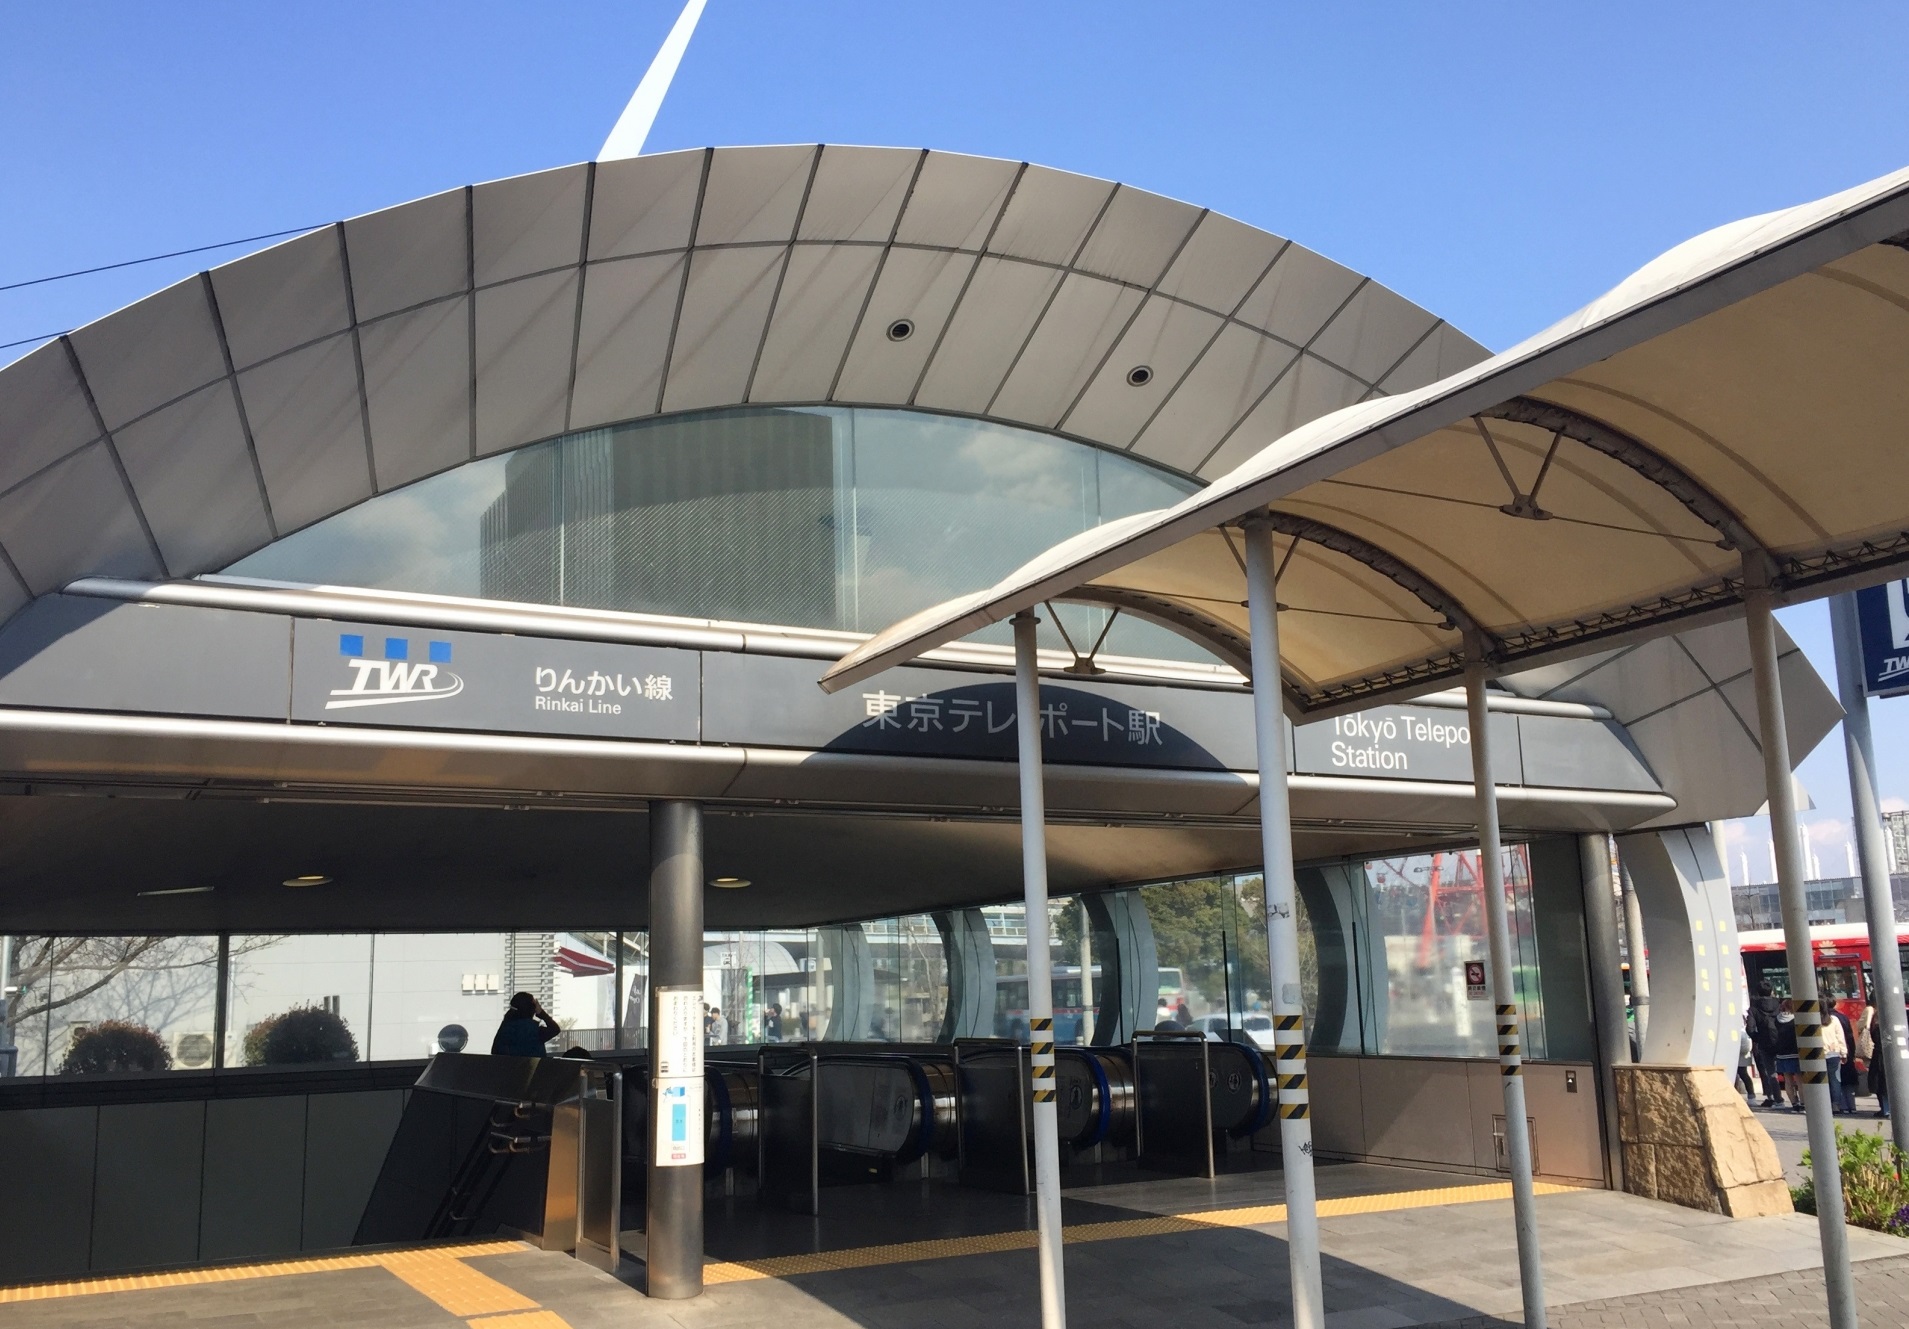 東京テレポート駅で暇つぶし 時間つぶし ができる人気おすすめスポット 東京暇つぶし 東京キリングタイム